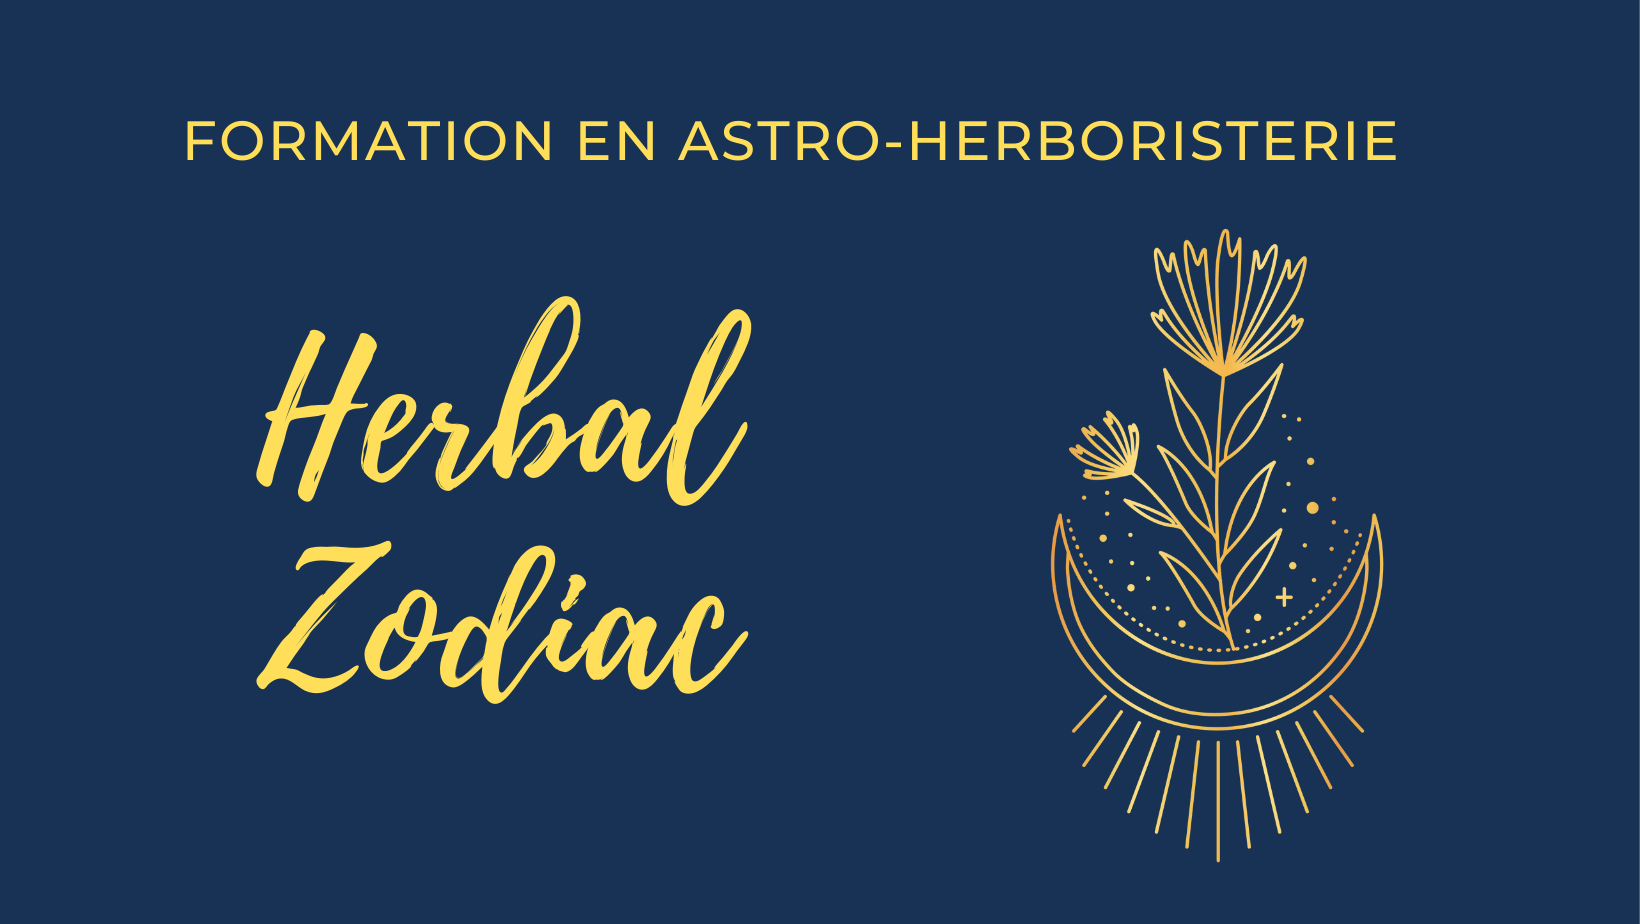 Formation Herbal Zodiac